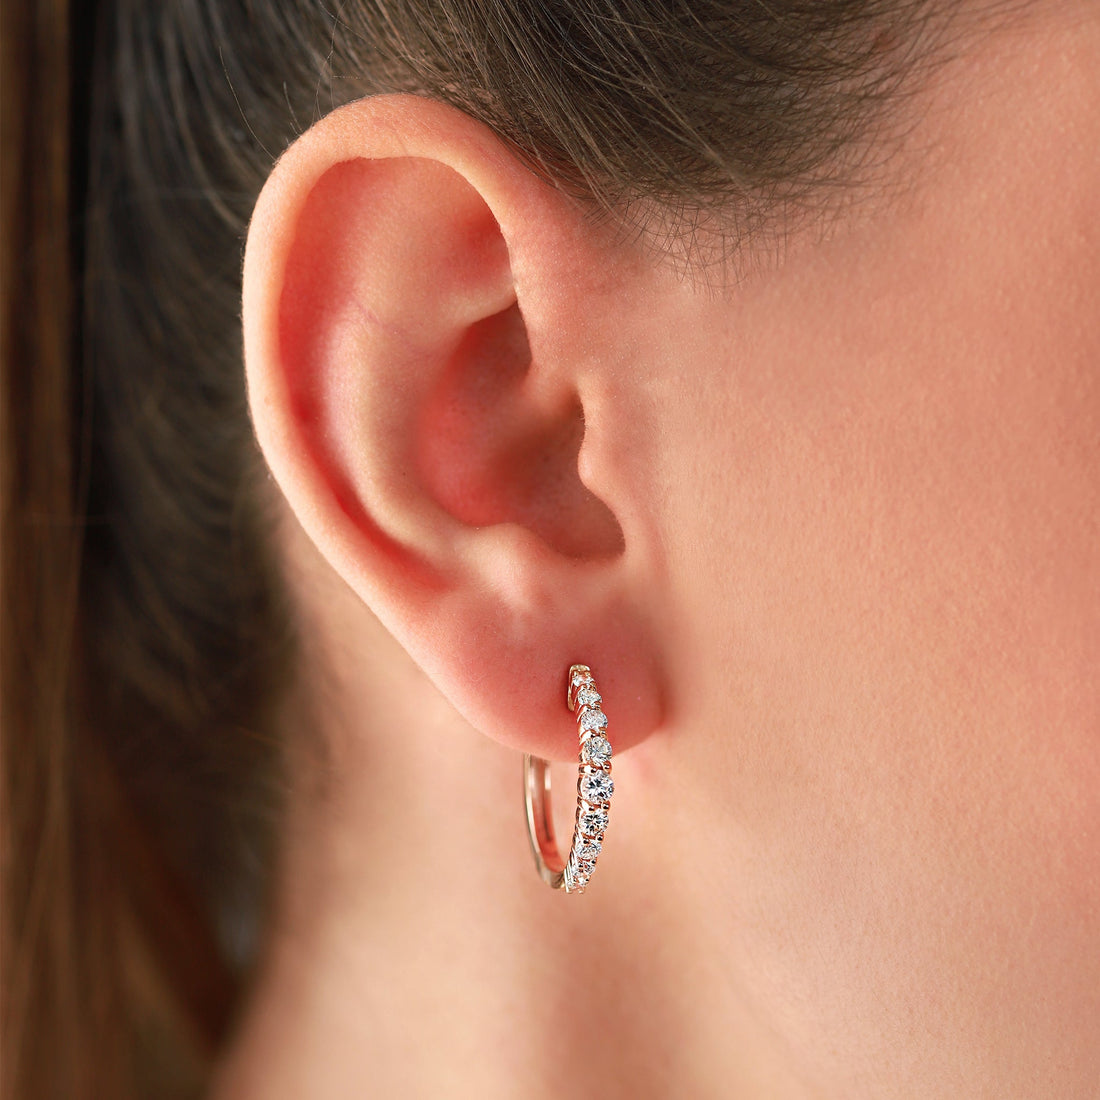 Jewelry Diamond Hoops | Earrings | 1.24 Cts. | 14K Gold - Rose / Pair / Diamonds - earring Zengoda Shop online